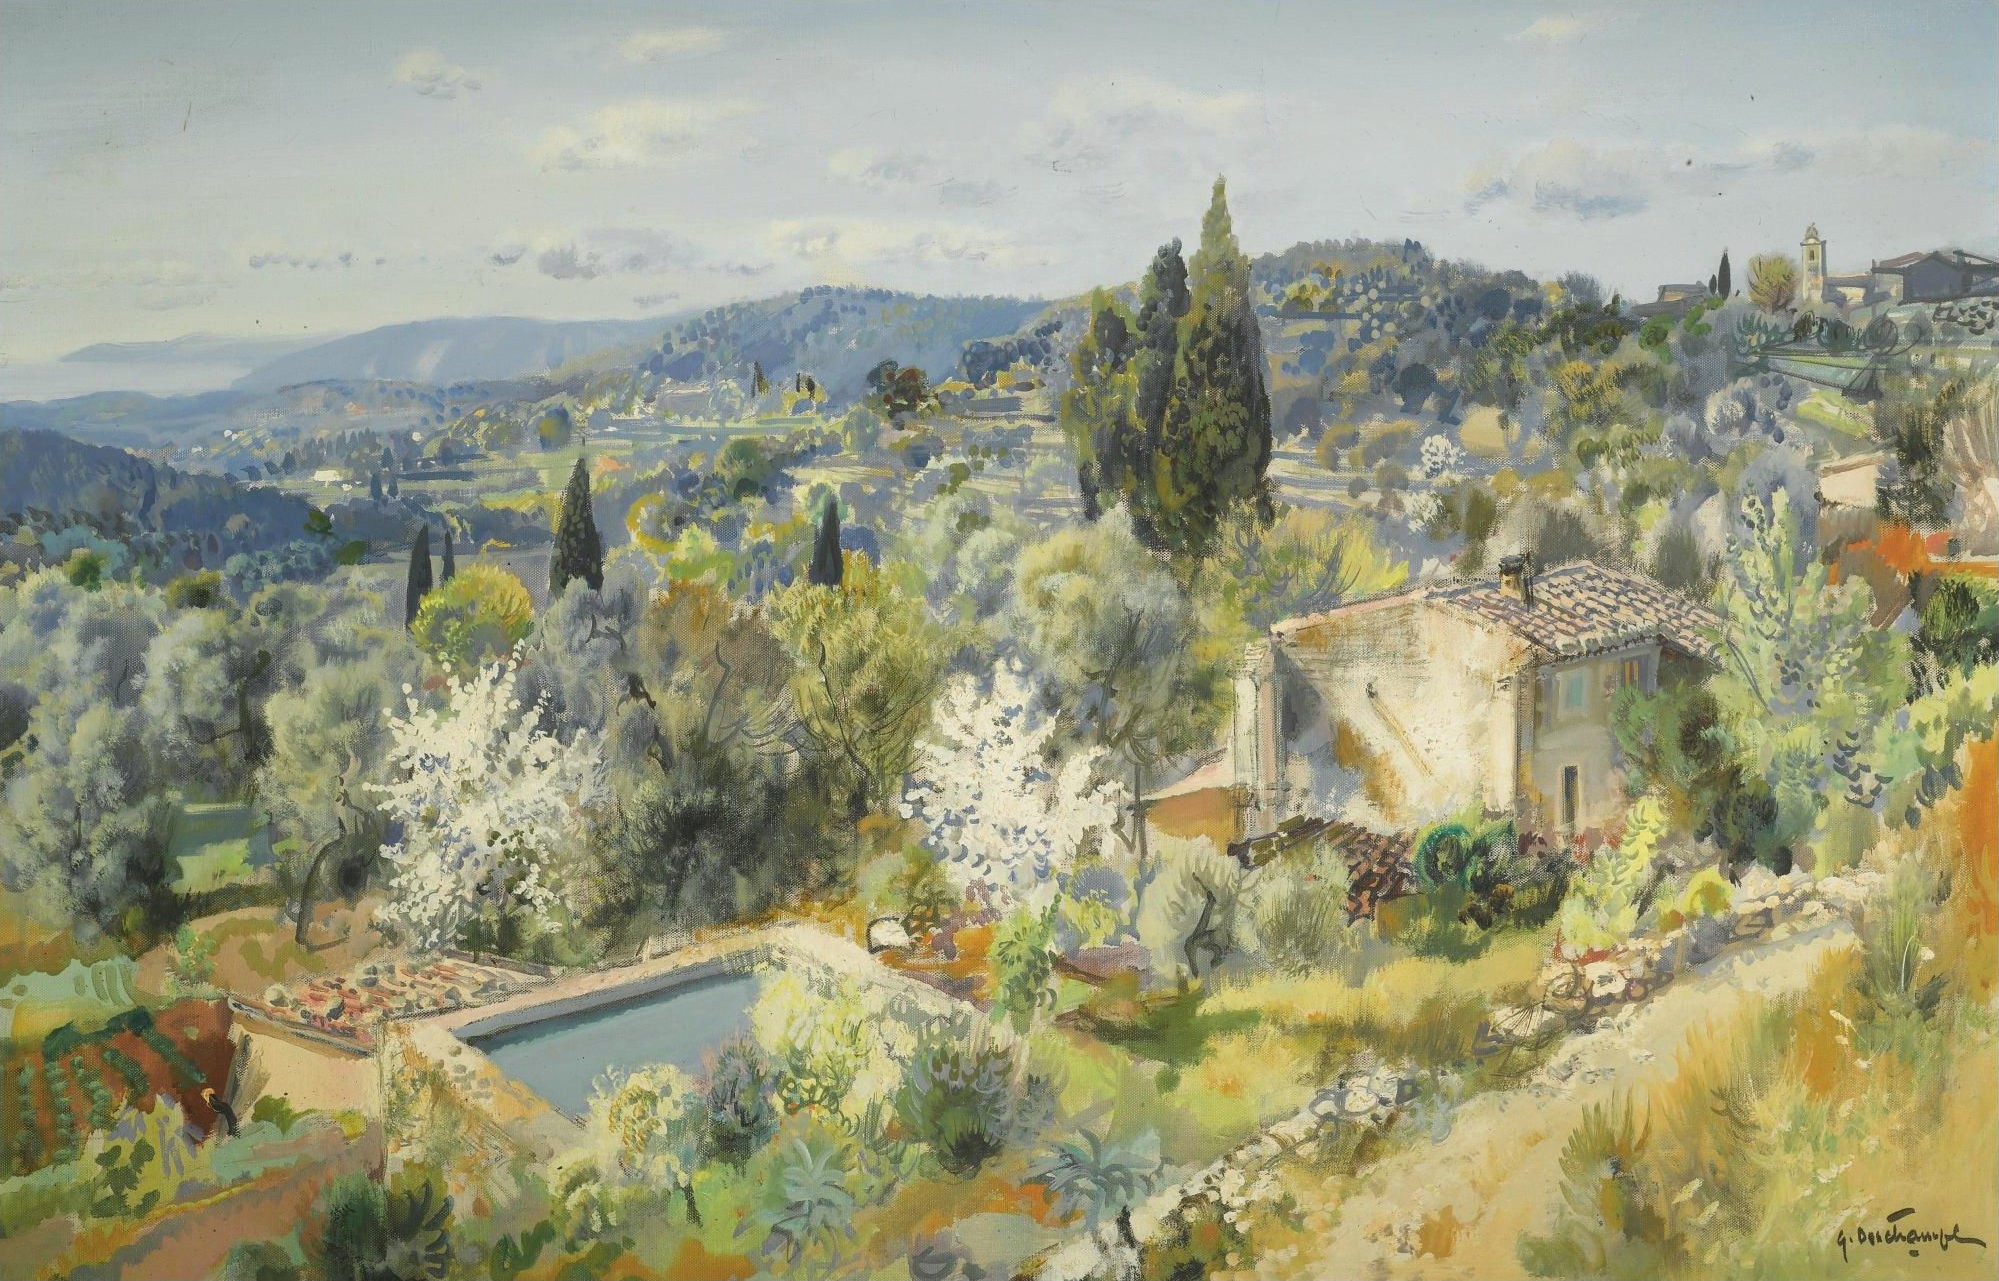 impressionism wallpaper,painting,watercolor paint,natural landscape,mountain village,landscape